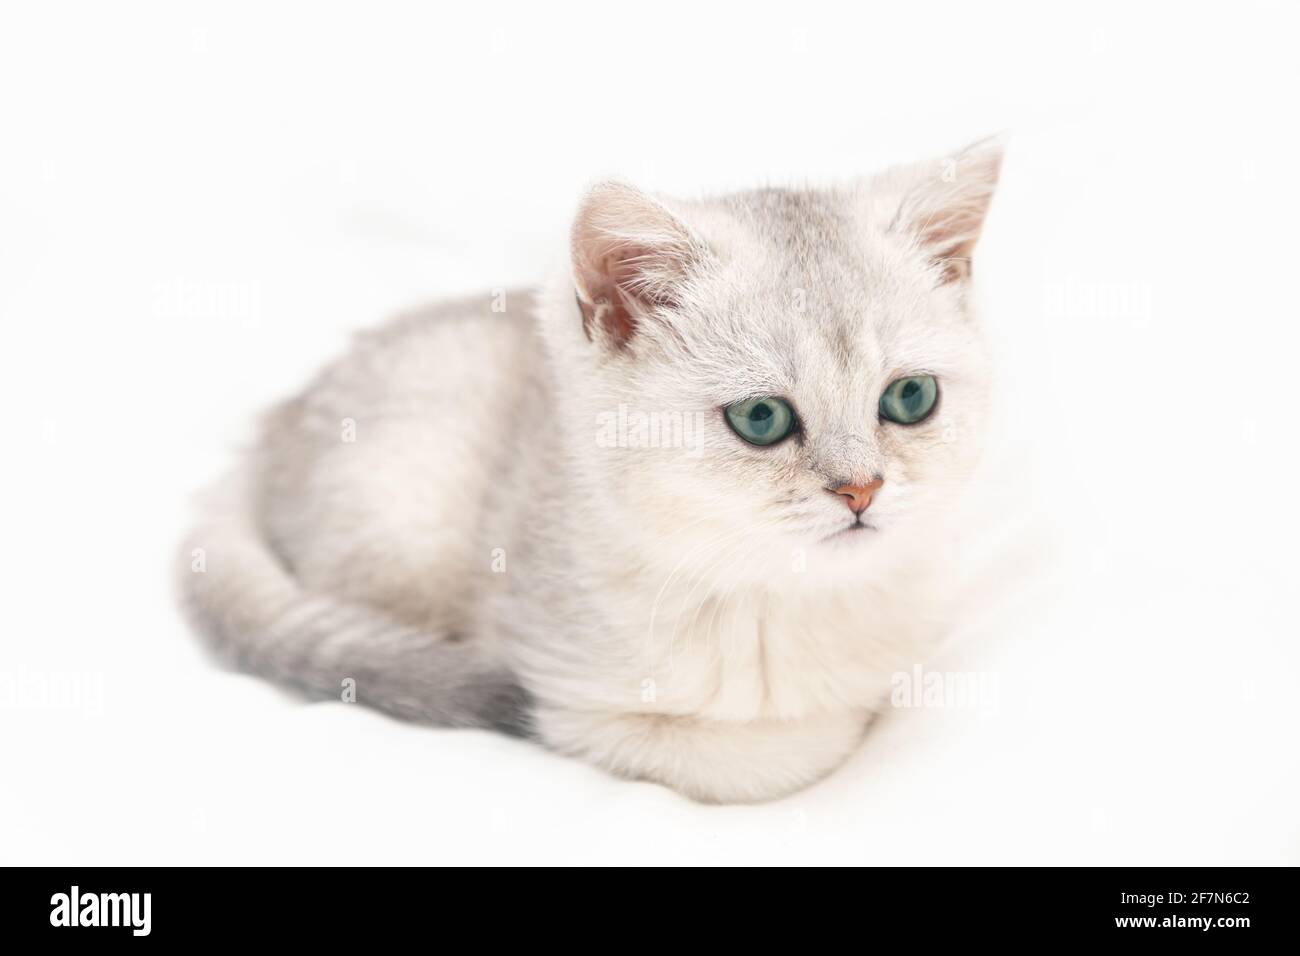 Kleines weißes britisches Kätzchen auf einer weißen Decke. Witziges, neugieriges Haustier. Speicherplatz kopieren. Stockfoto